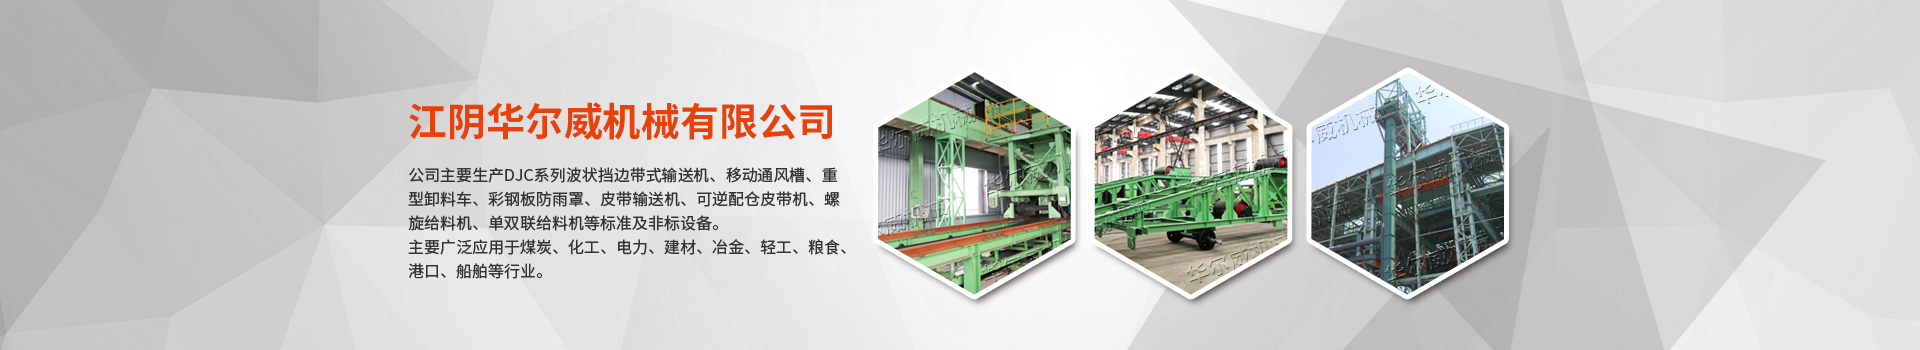 通風槽除塵小車(發明專利）-江陰華爾威機械有限公司